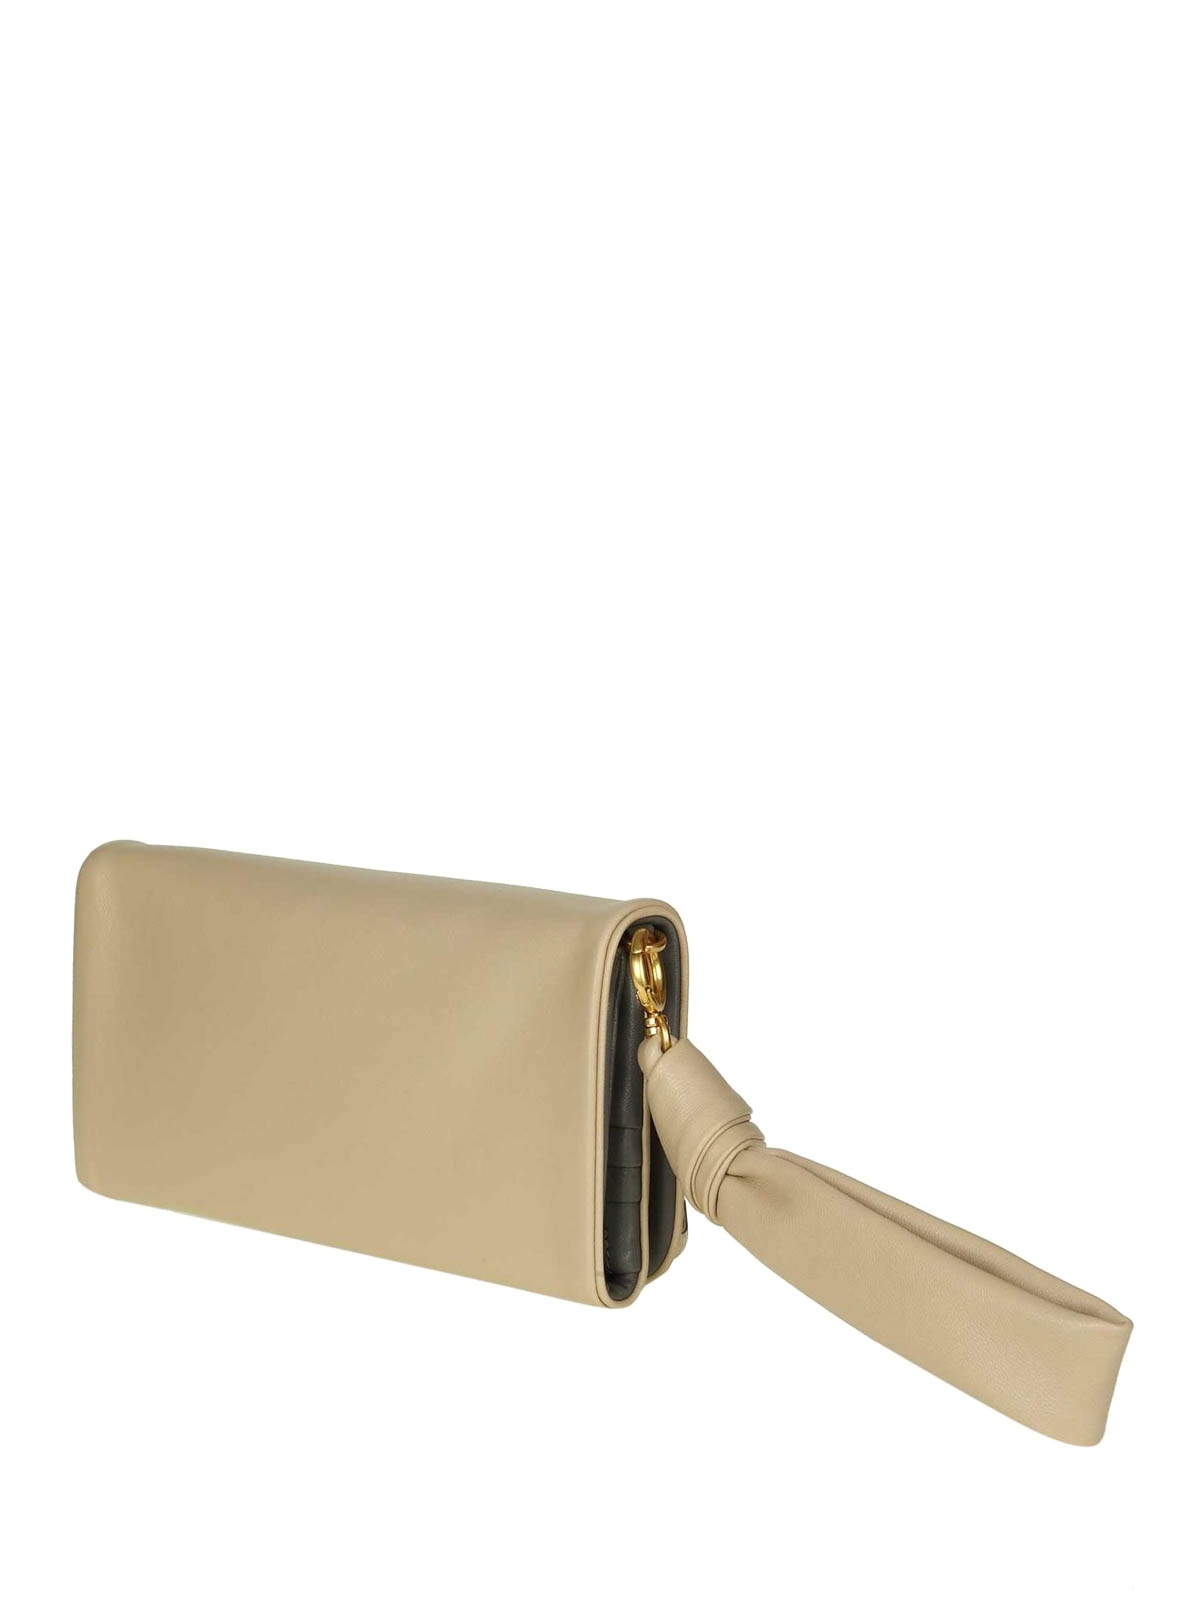 Wallets & purses Tory Burch - Wristlet light beige leather wallet - 50352262